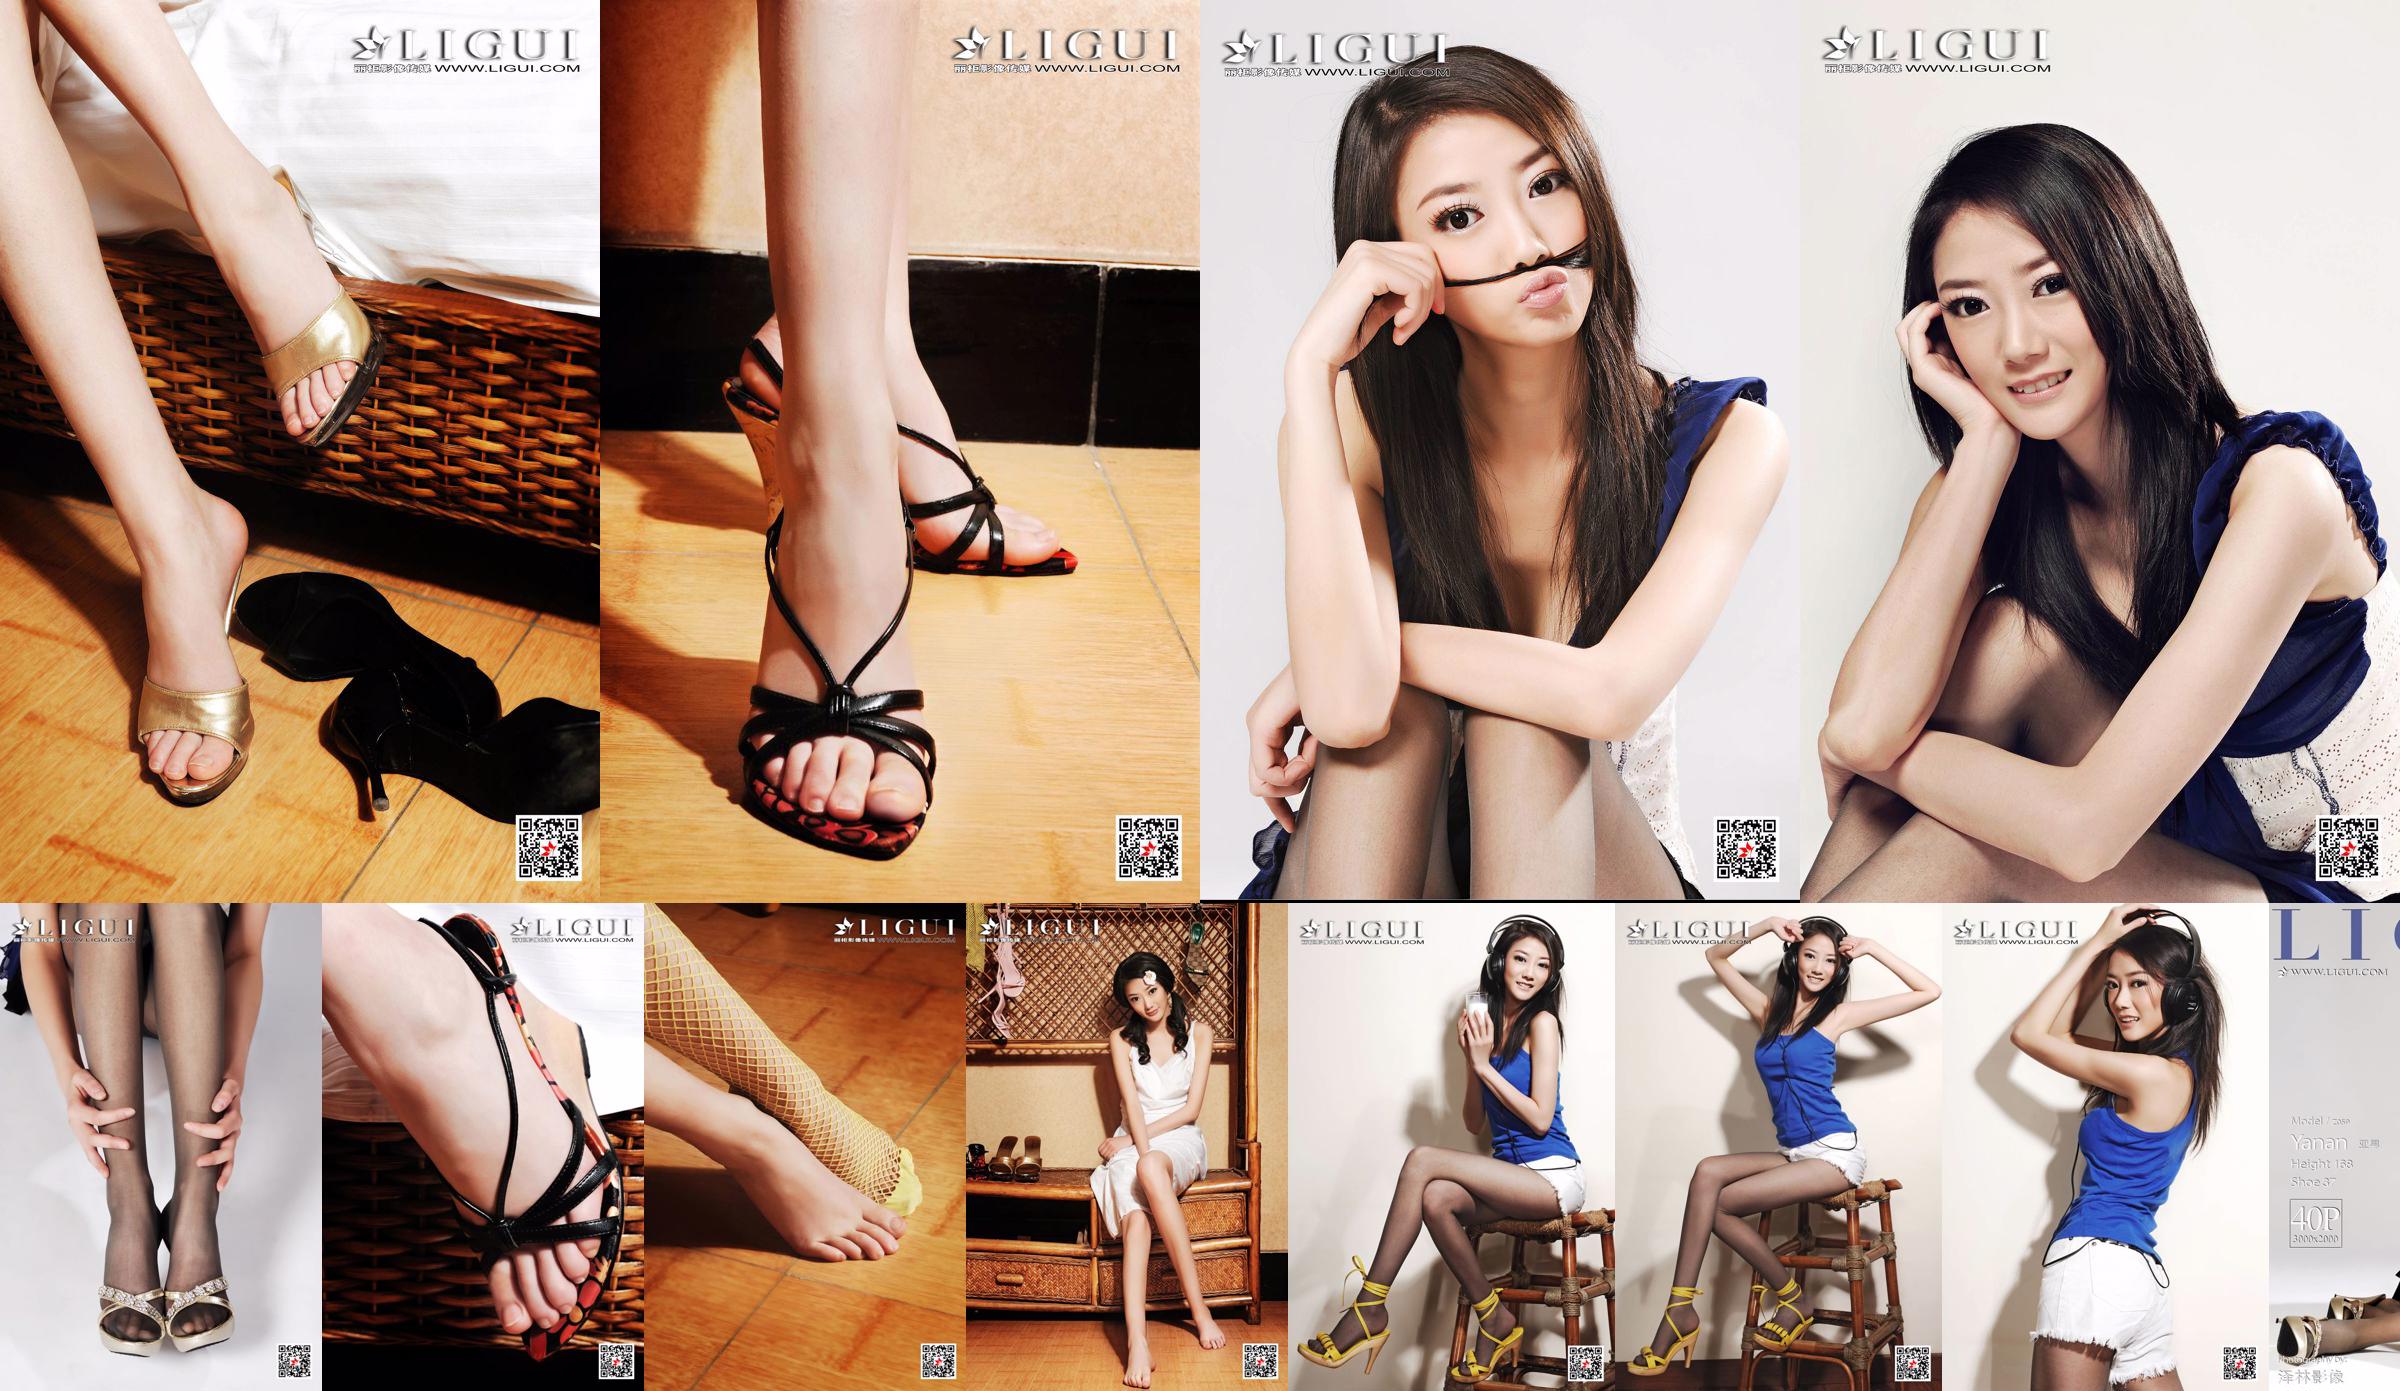 Chàng trai người mẫu châu Á "Cô gái có khí chất chân dài" [Ligui Ligui] No.5f44f1 Trang 31